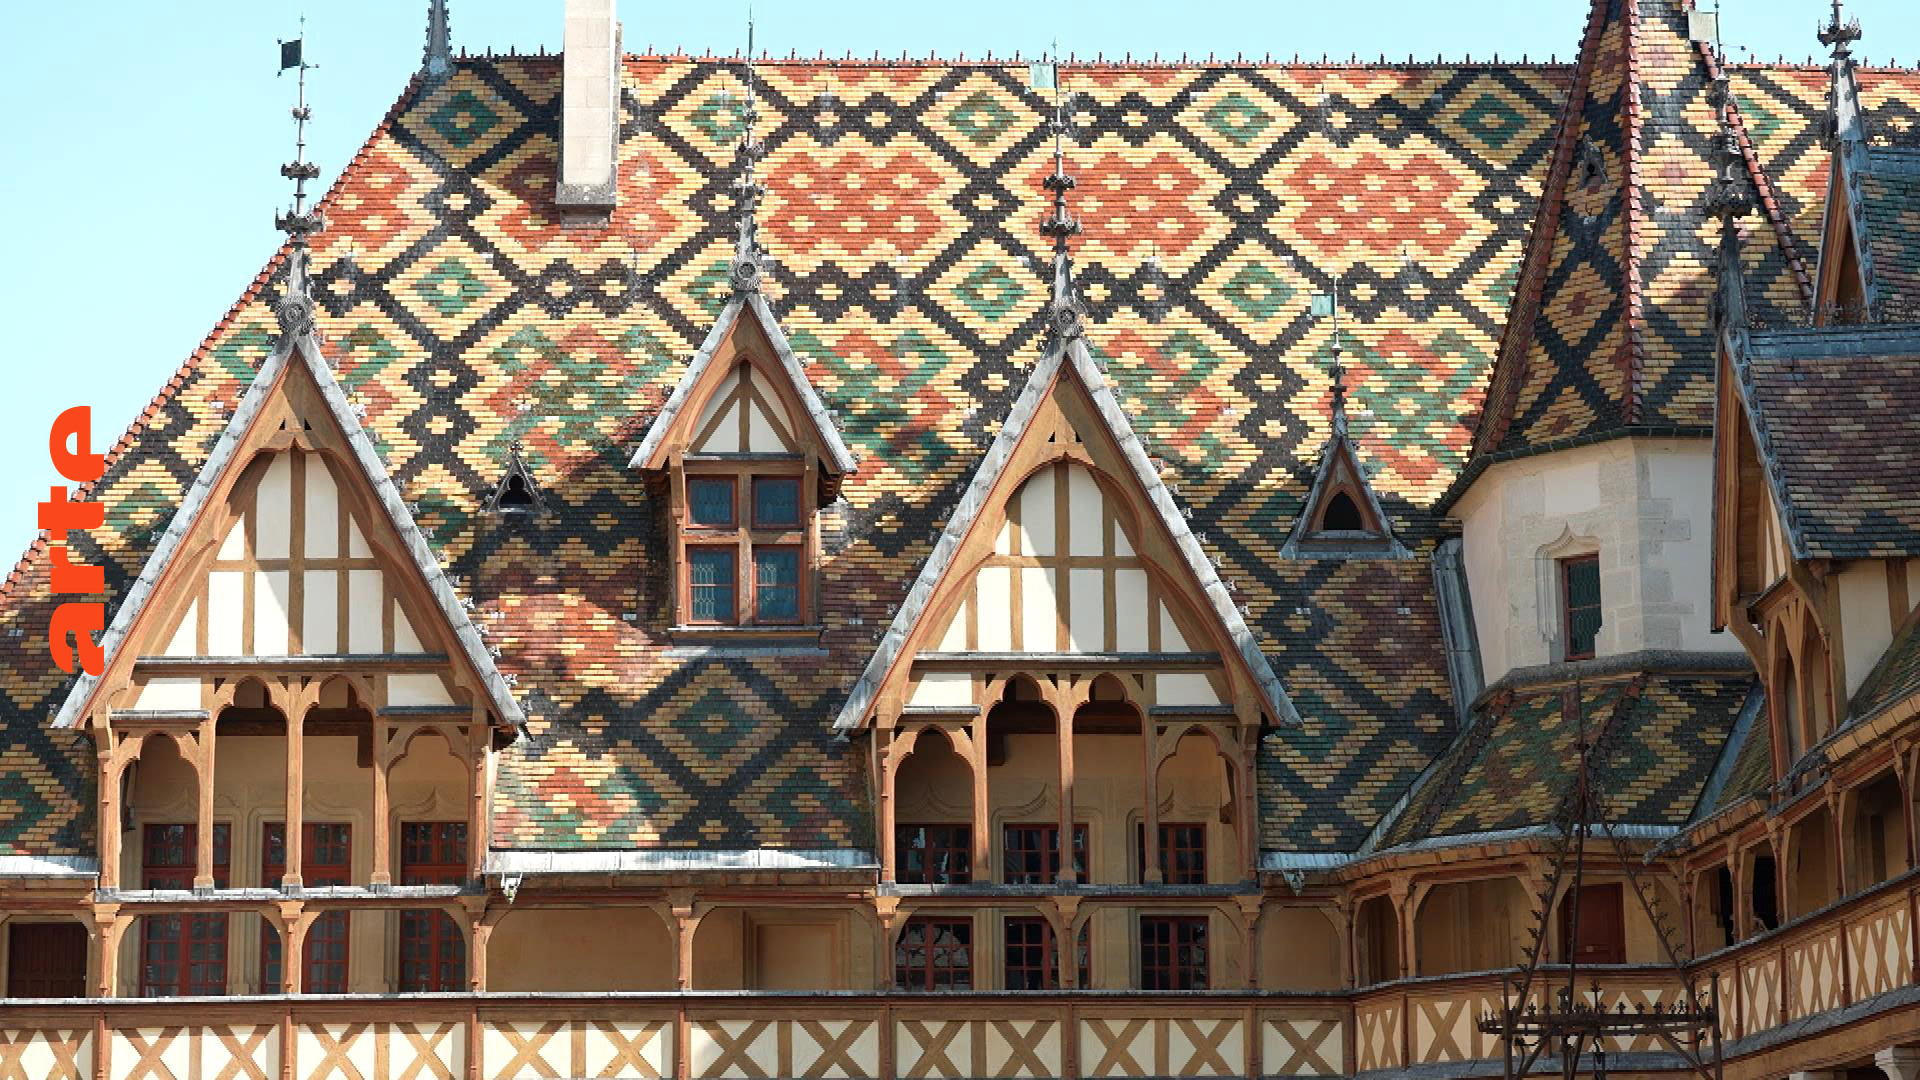 Burgund: Land der bunten Dächer